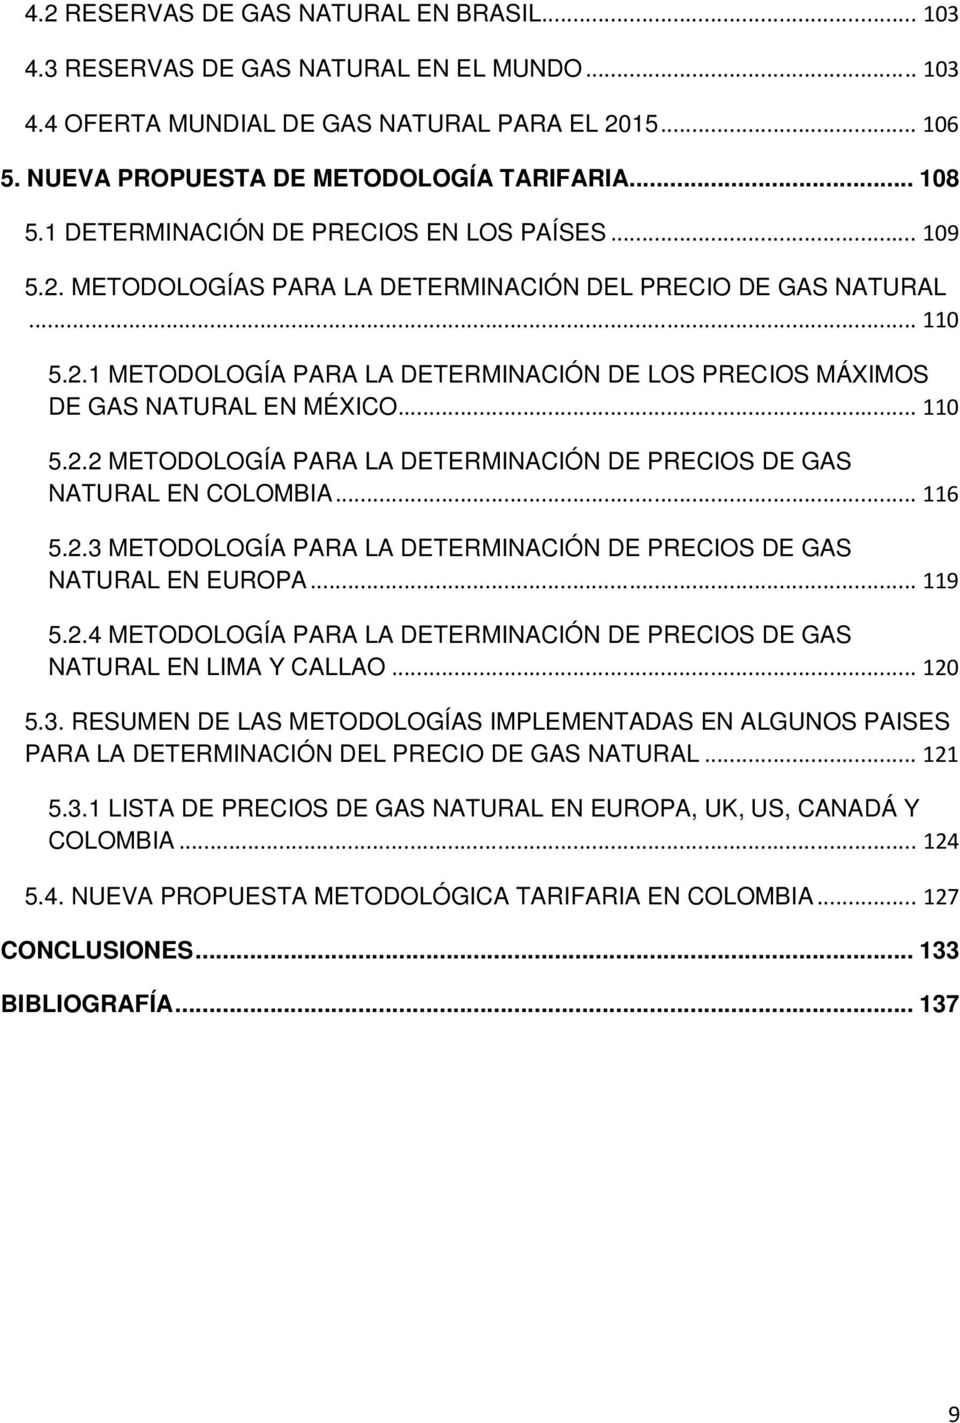 .. 110 5.2.2 METODOLOGÍA PARA LA DETERMINACIÓN DE PRECIOS DE GAS NATURAL EN COLOMBIA... 116 5.2.3 METODOLOGÍA PARA LA DETERMINACIÓN DE PRECIOS DE GAS NATURAL EN EUROPA... 119 5.2.4 METODOLOGÍA PARA LA DETERMINACIÓN DE PRECIOS DE GAS NATURAL EN LIMA Y CALLAO.